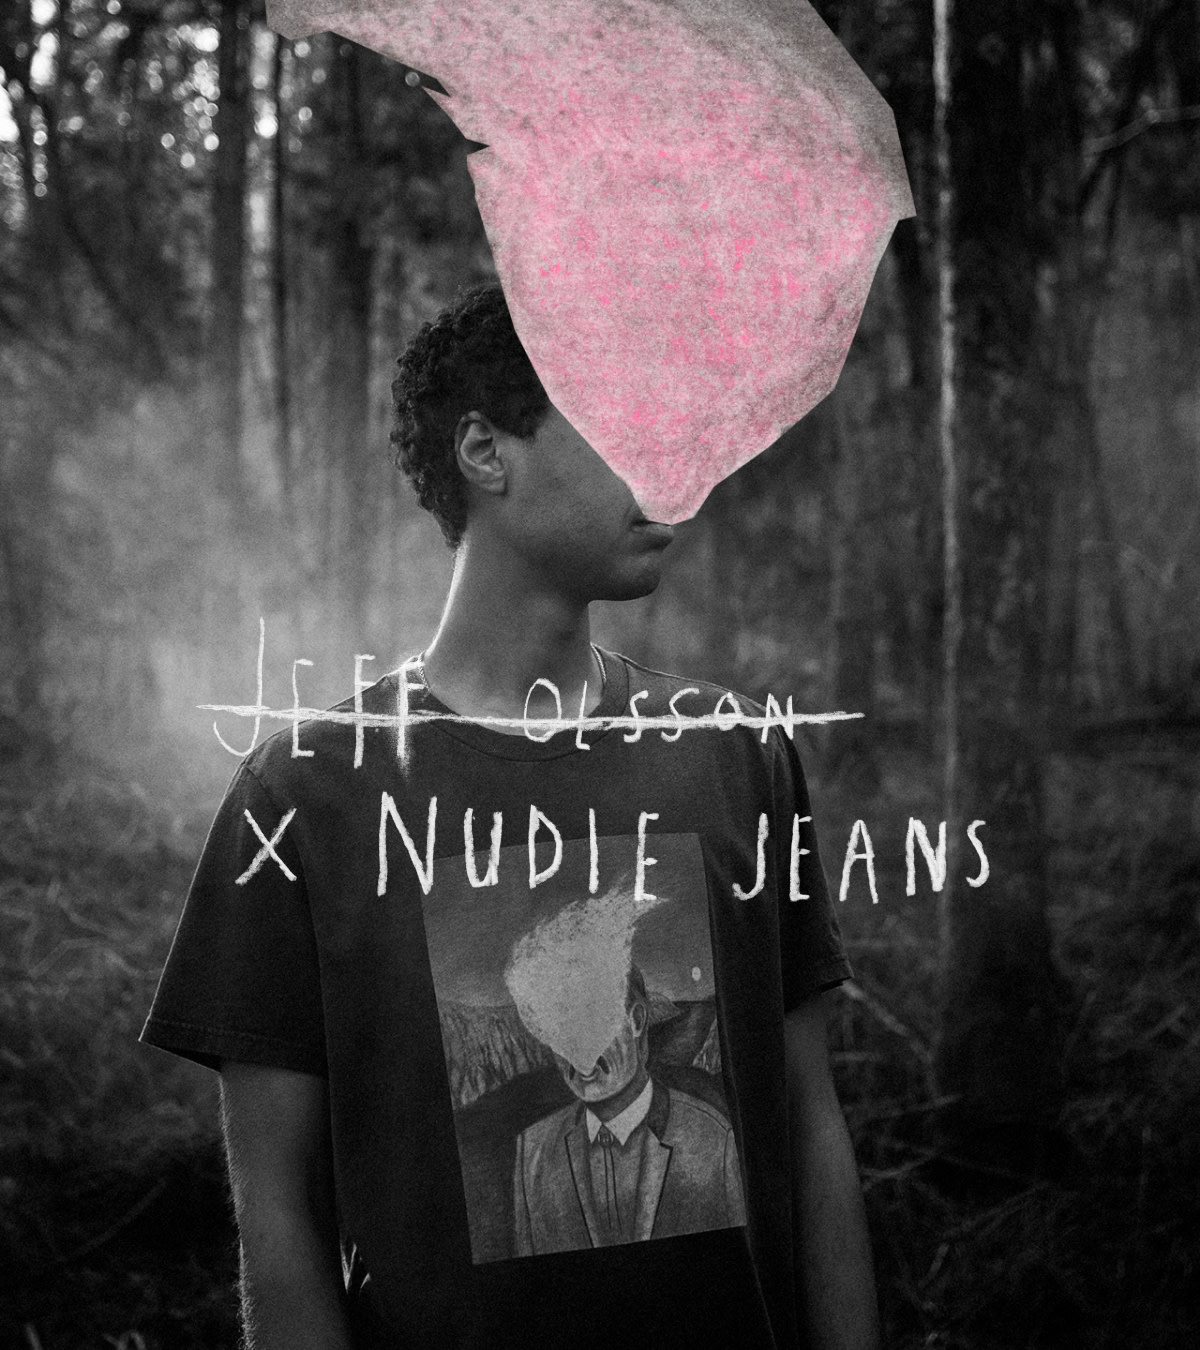 Jeff-Olsson x Nudie Jeans 